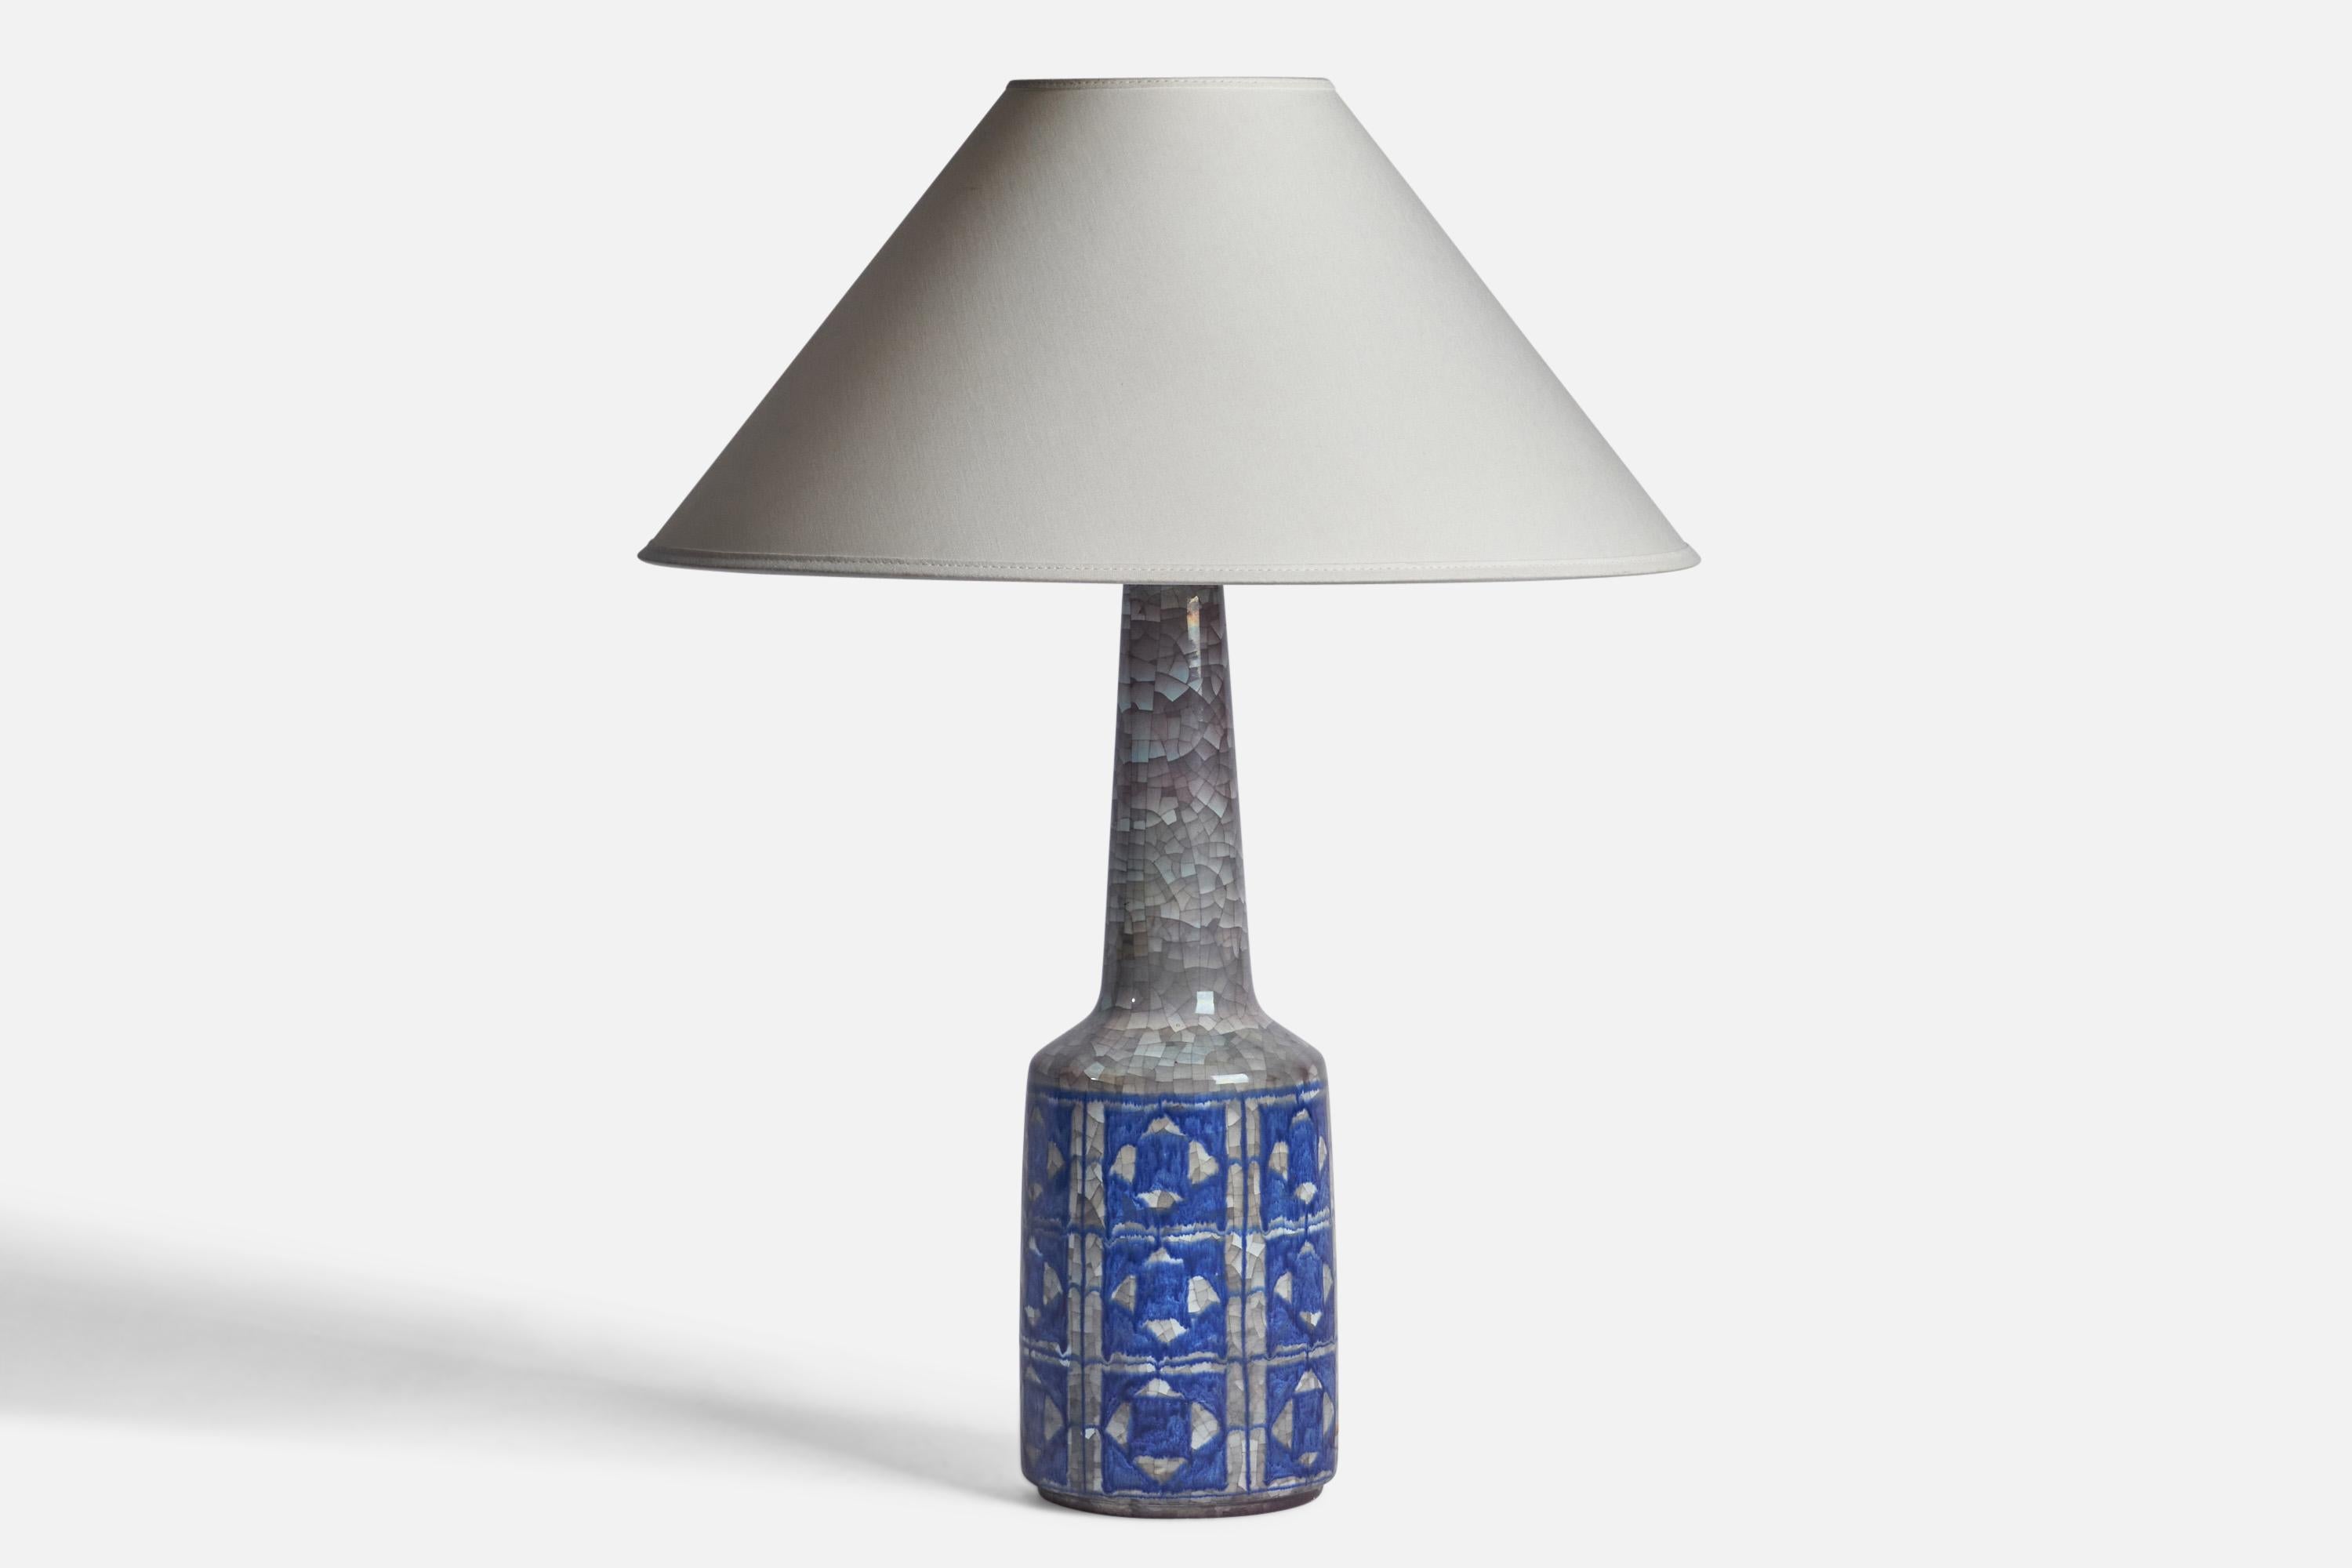 Lampe de table à glaçure bleue et grise conçue et produite par Michael Andersen, Danemark, vers les années 1950.

Dimensions de la lampe (pouces) : 16.75